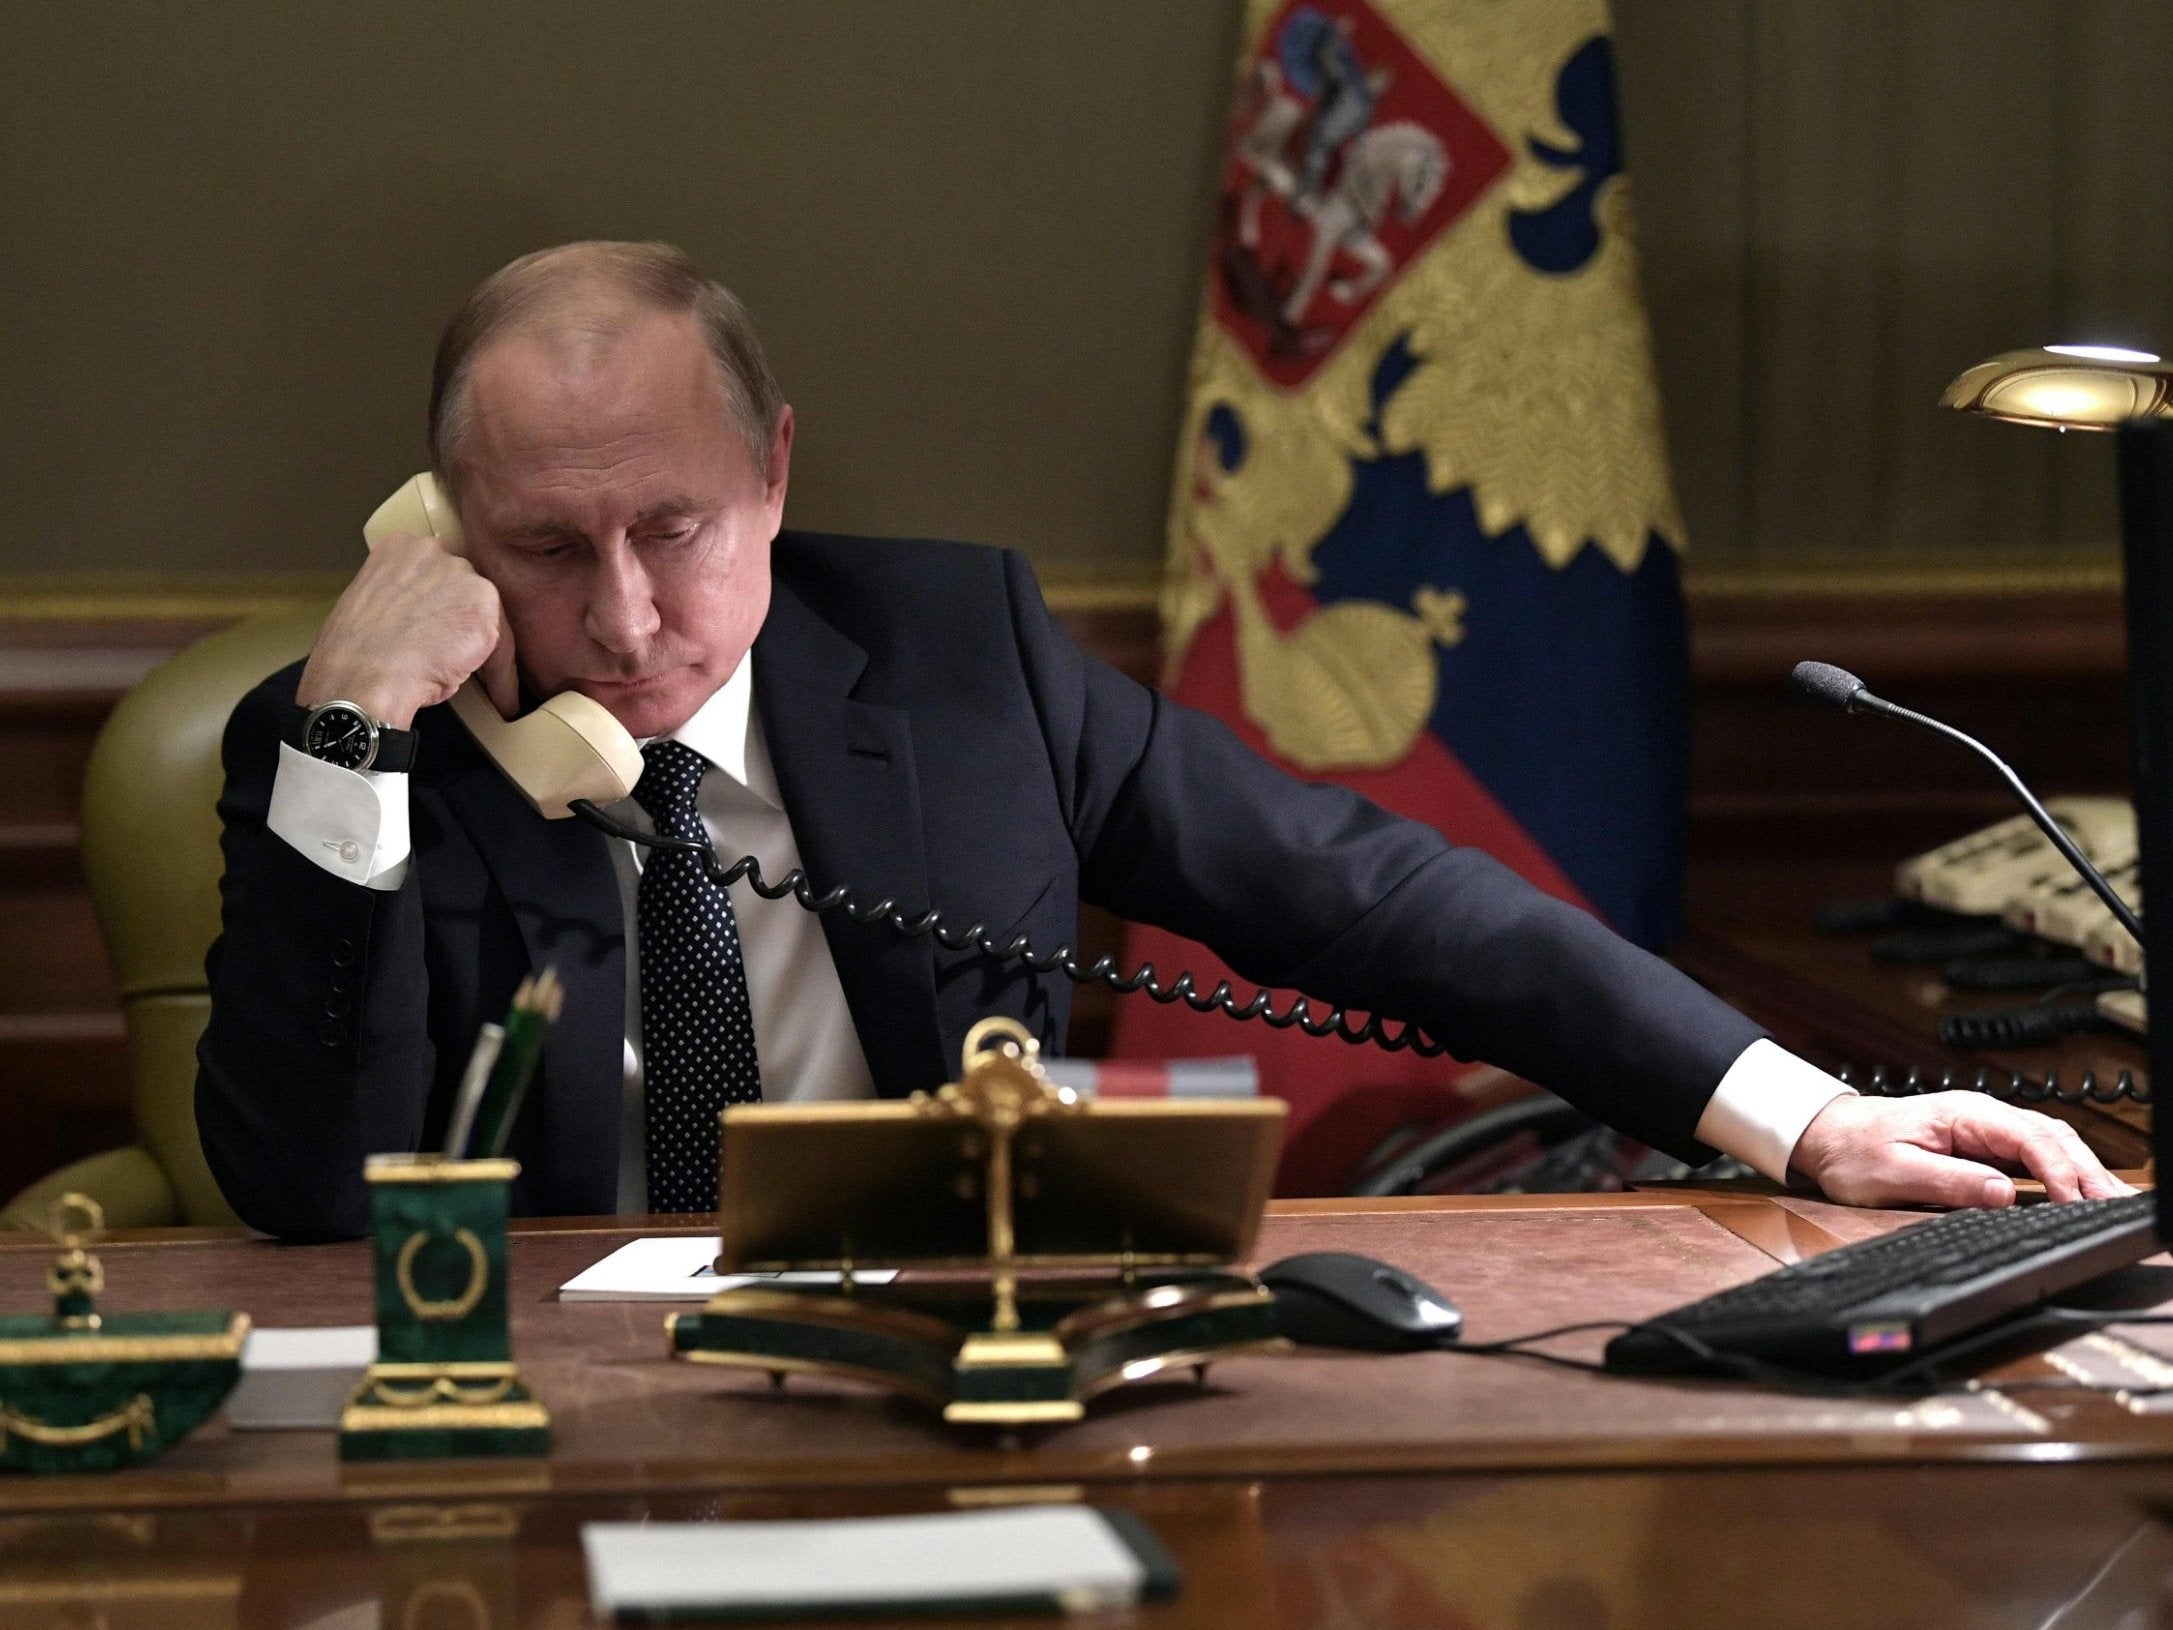 Vladimir Putin speaks on the phone in his office in Saint Petersburg